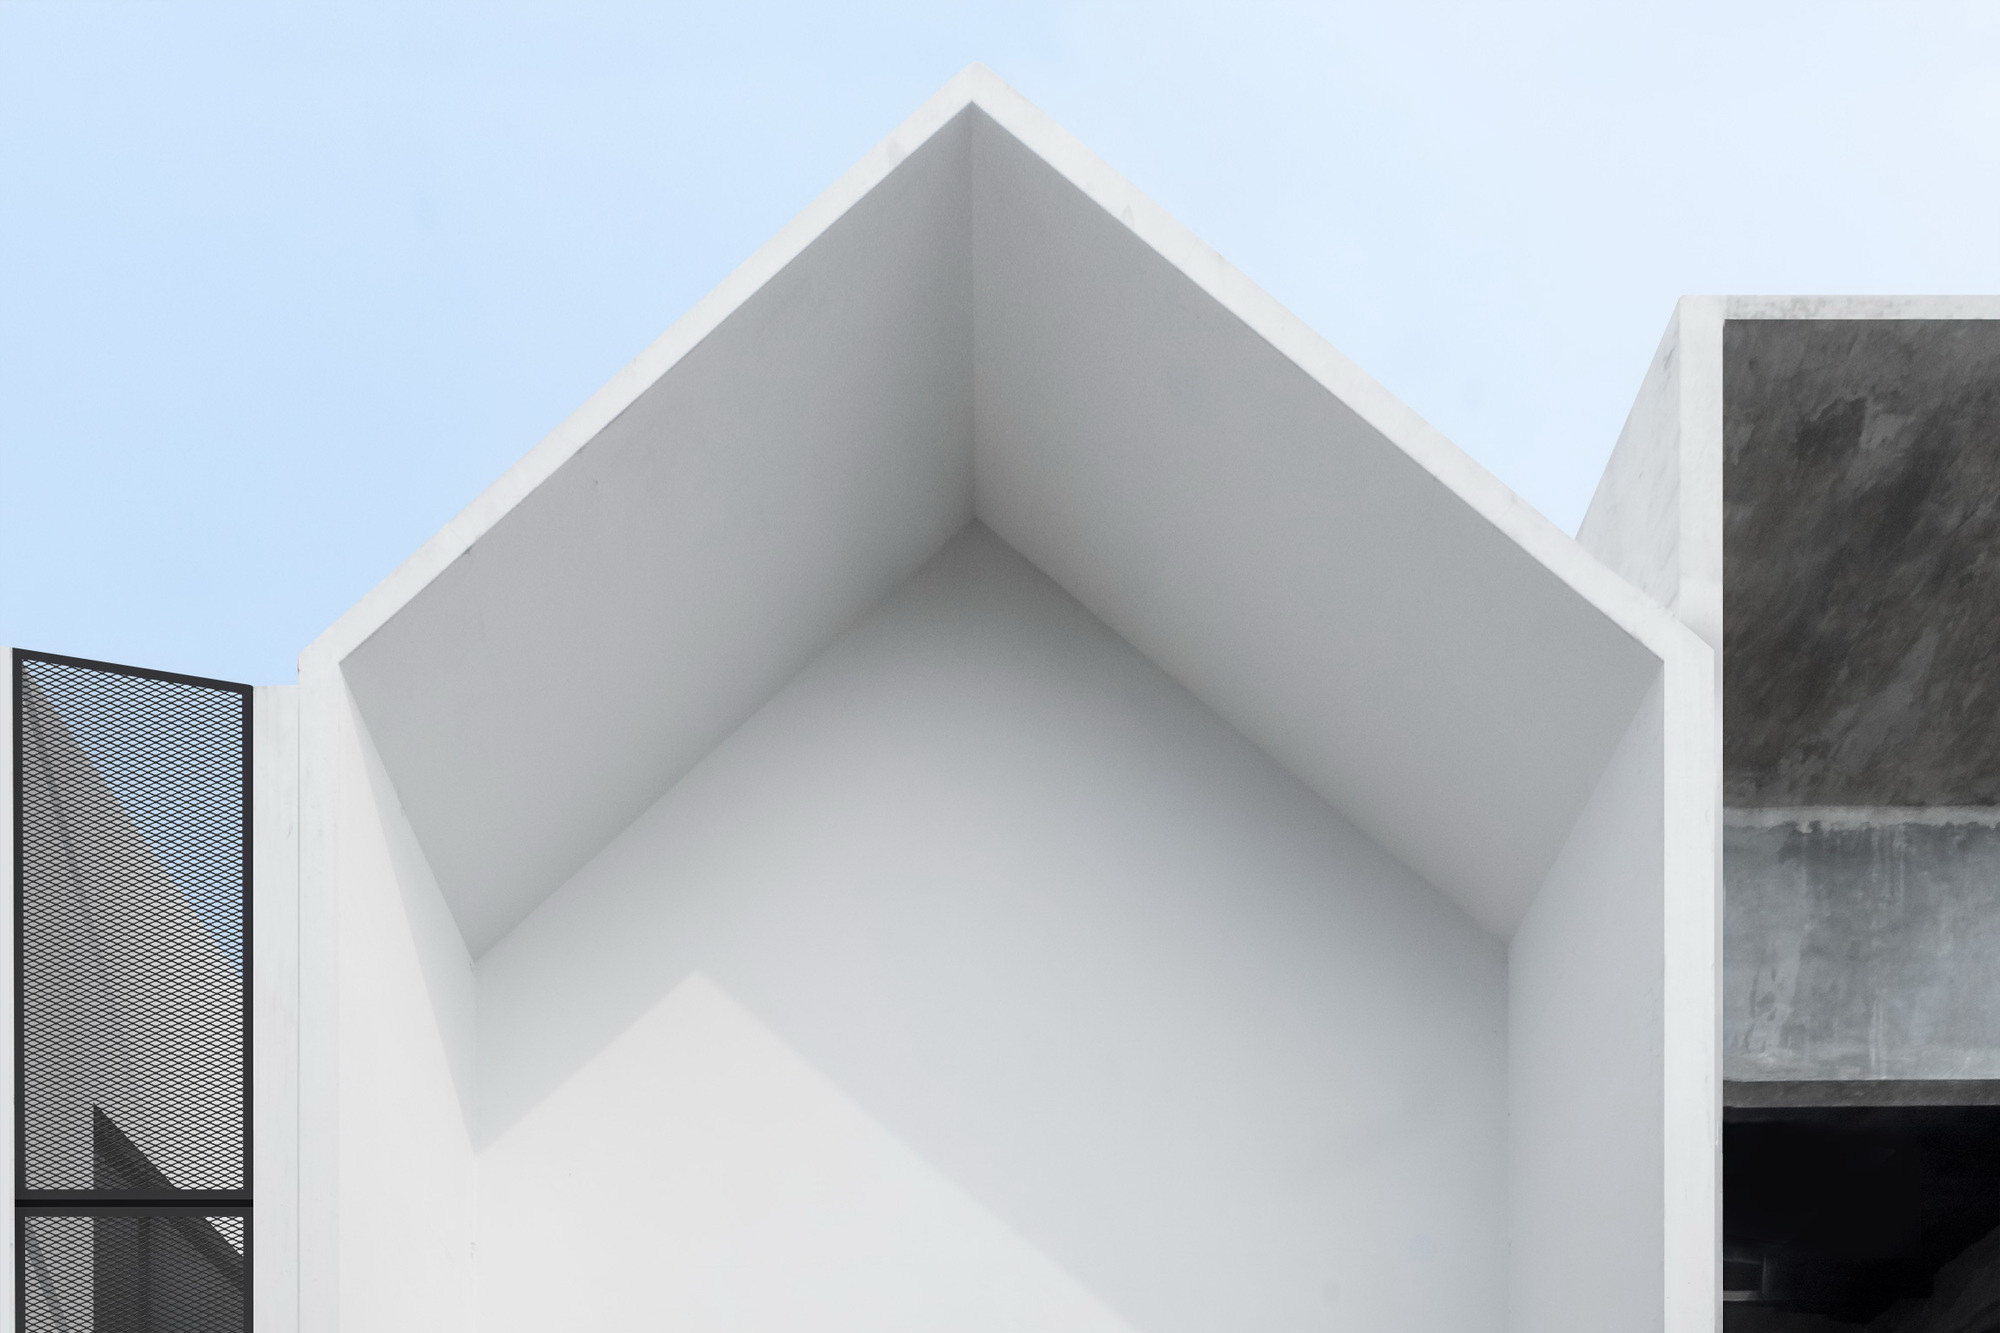 MO House | Minimalist Tiny House by DFORM